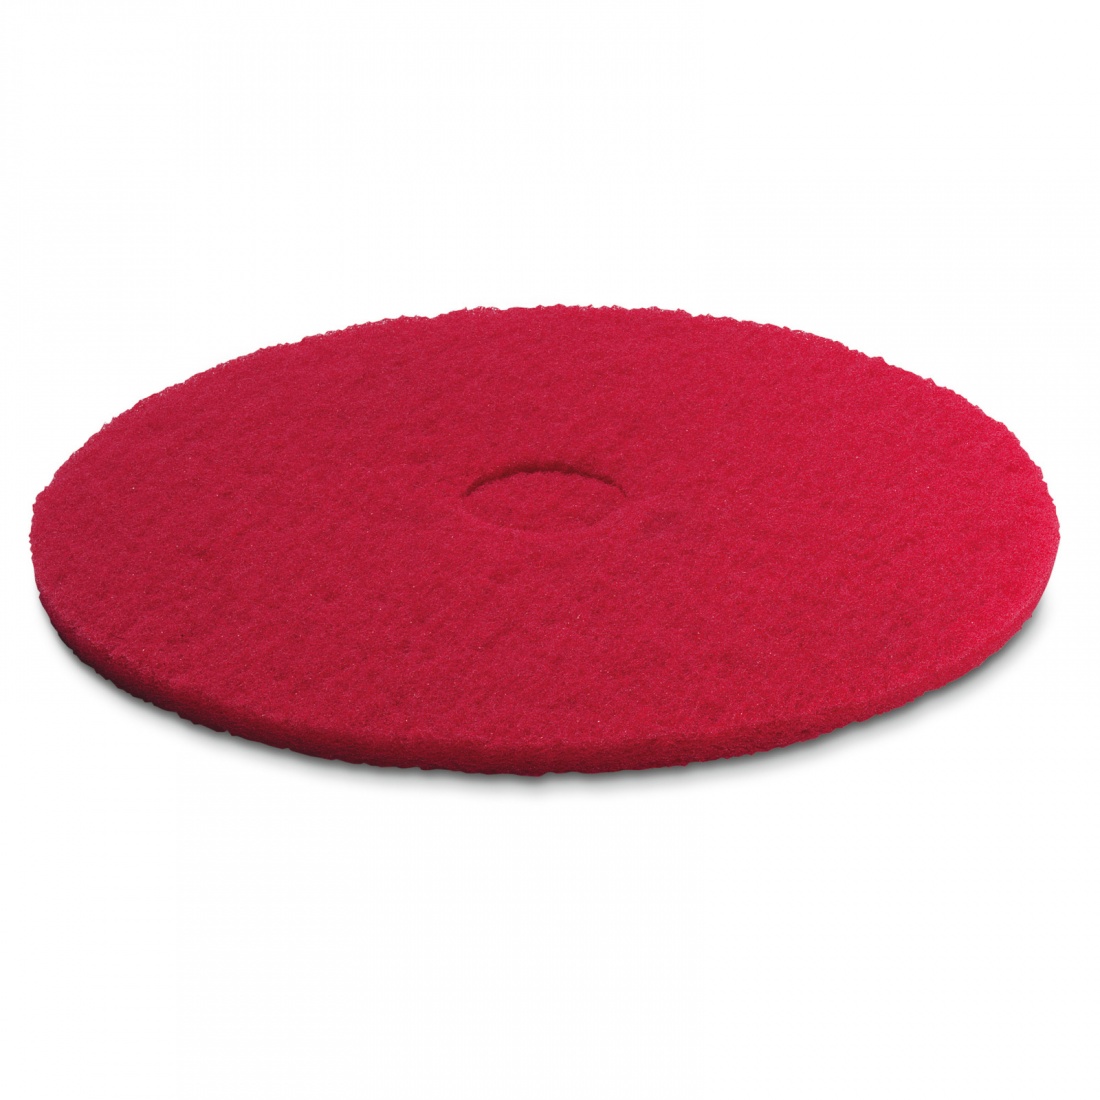 Пад, средне мягкий, красный, 432 mm